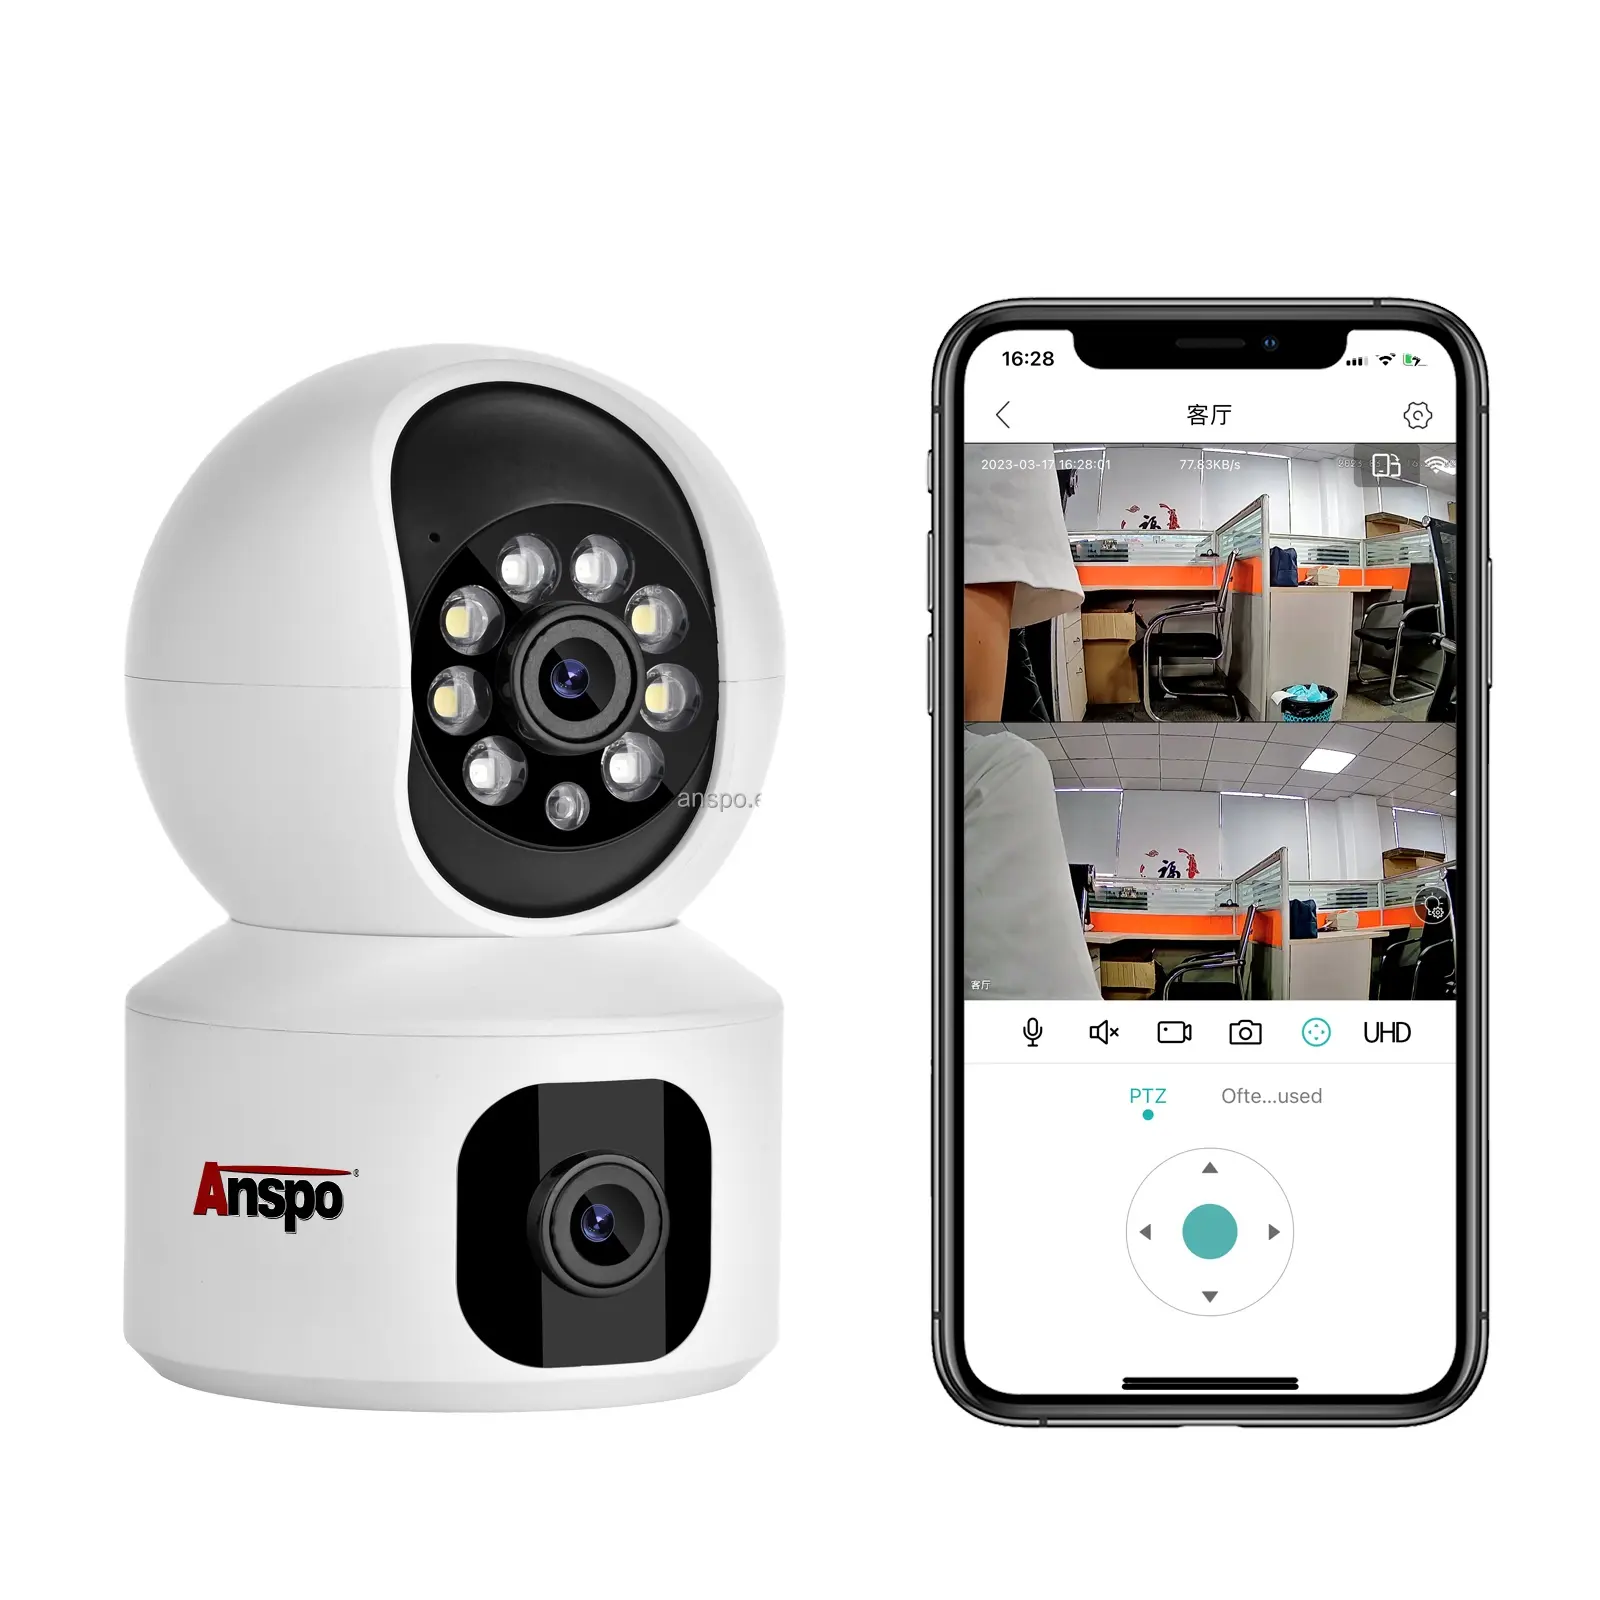 كاميرا ذكية منزلية مزودة بمنظور متصل بالواي فاي PTZ من Anspo بدقة 2 ميجا بيكسل مزودة بعدسة مزدوجة للمراقبة والتصوير ثنائي الاتجاه بدقة 1080 بكسل CCTV كاميرا مراقبة لاسلكية CCTV